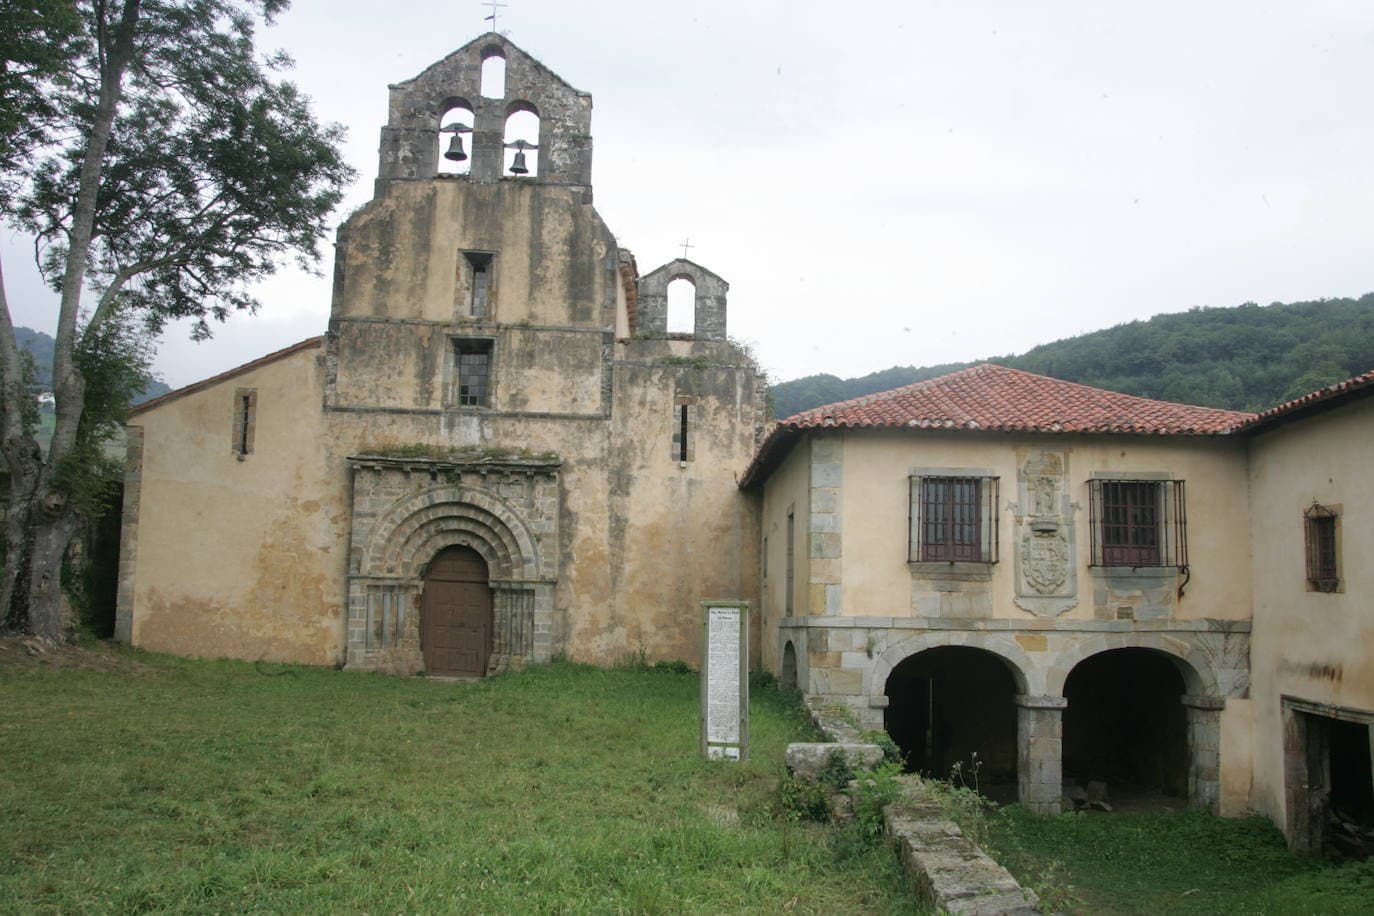 Monasterio de Santa María la Real de Obona. Situado en Tineo, se construyó en el siglo XIII sobre un anterior monasterio que se cree fue fundado en el siglo VIII. Declarado Monumento Nacional en 1982. Parcialmente en ruina.